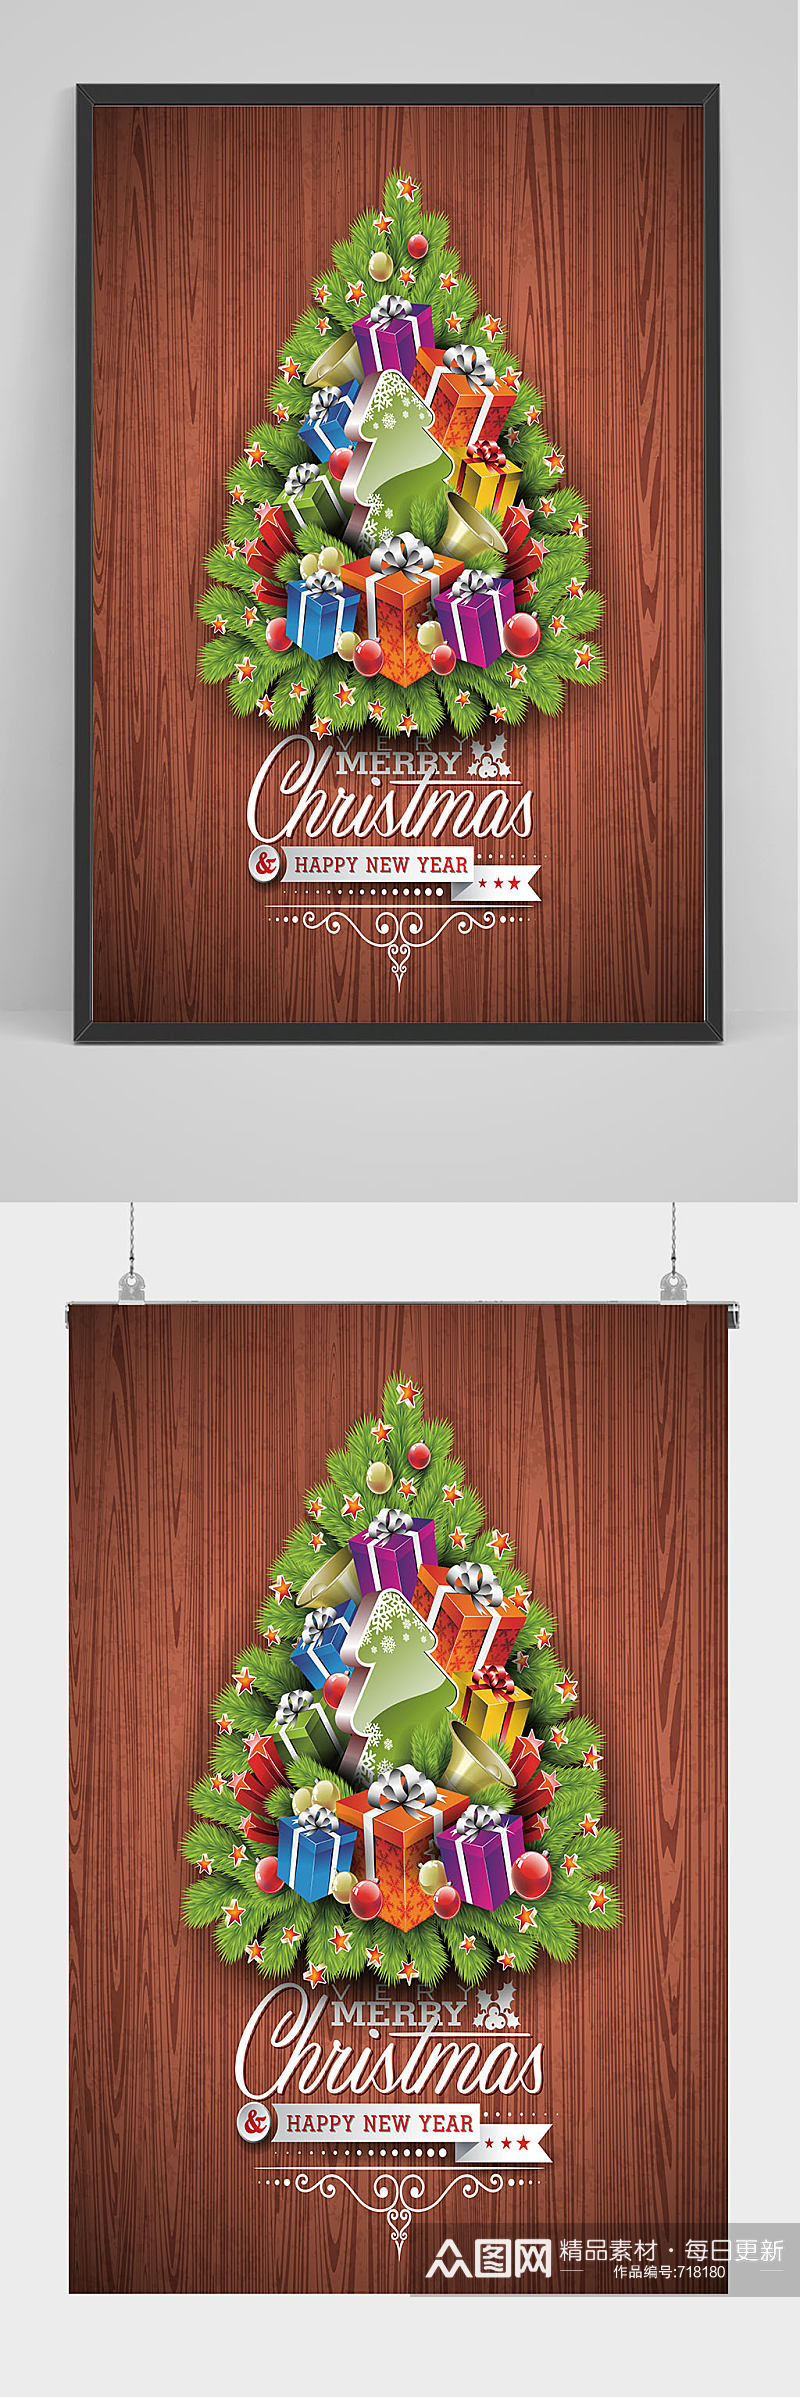 精品圣诞树圣诞节海报设计素材